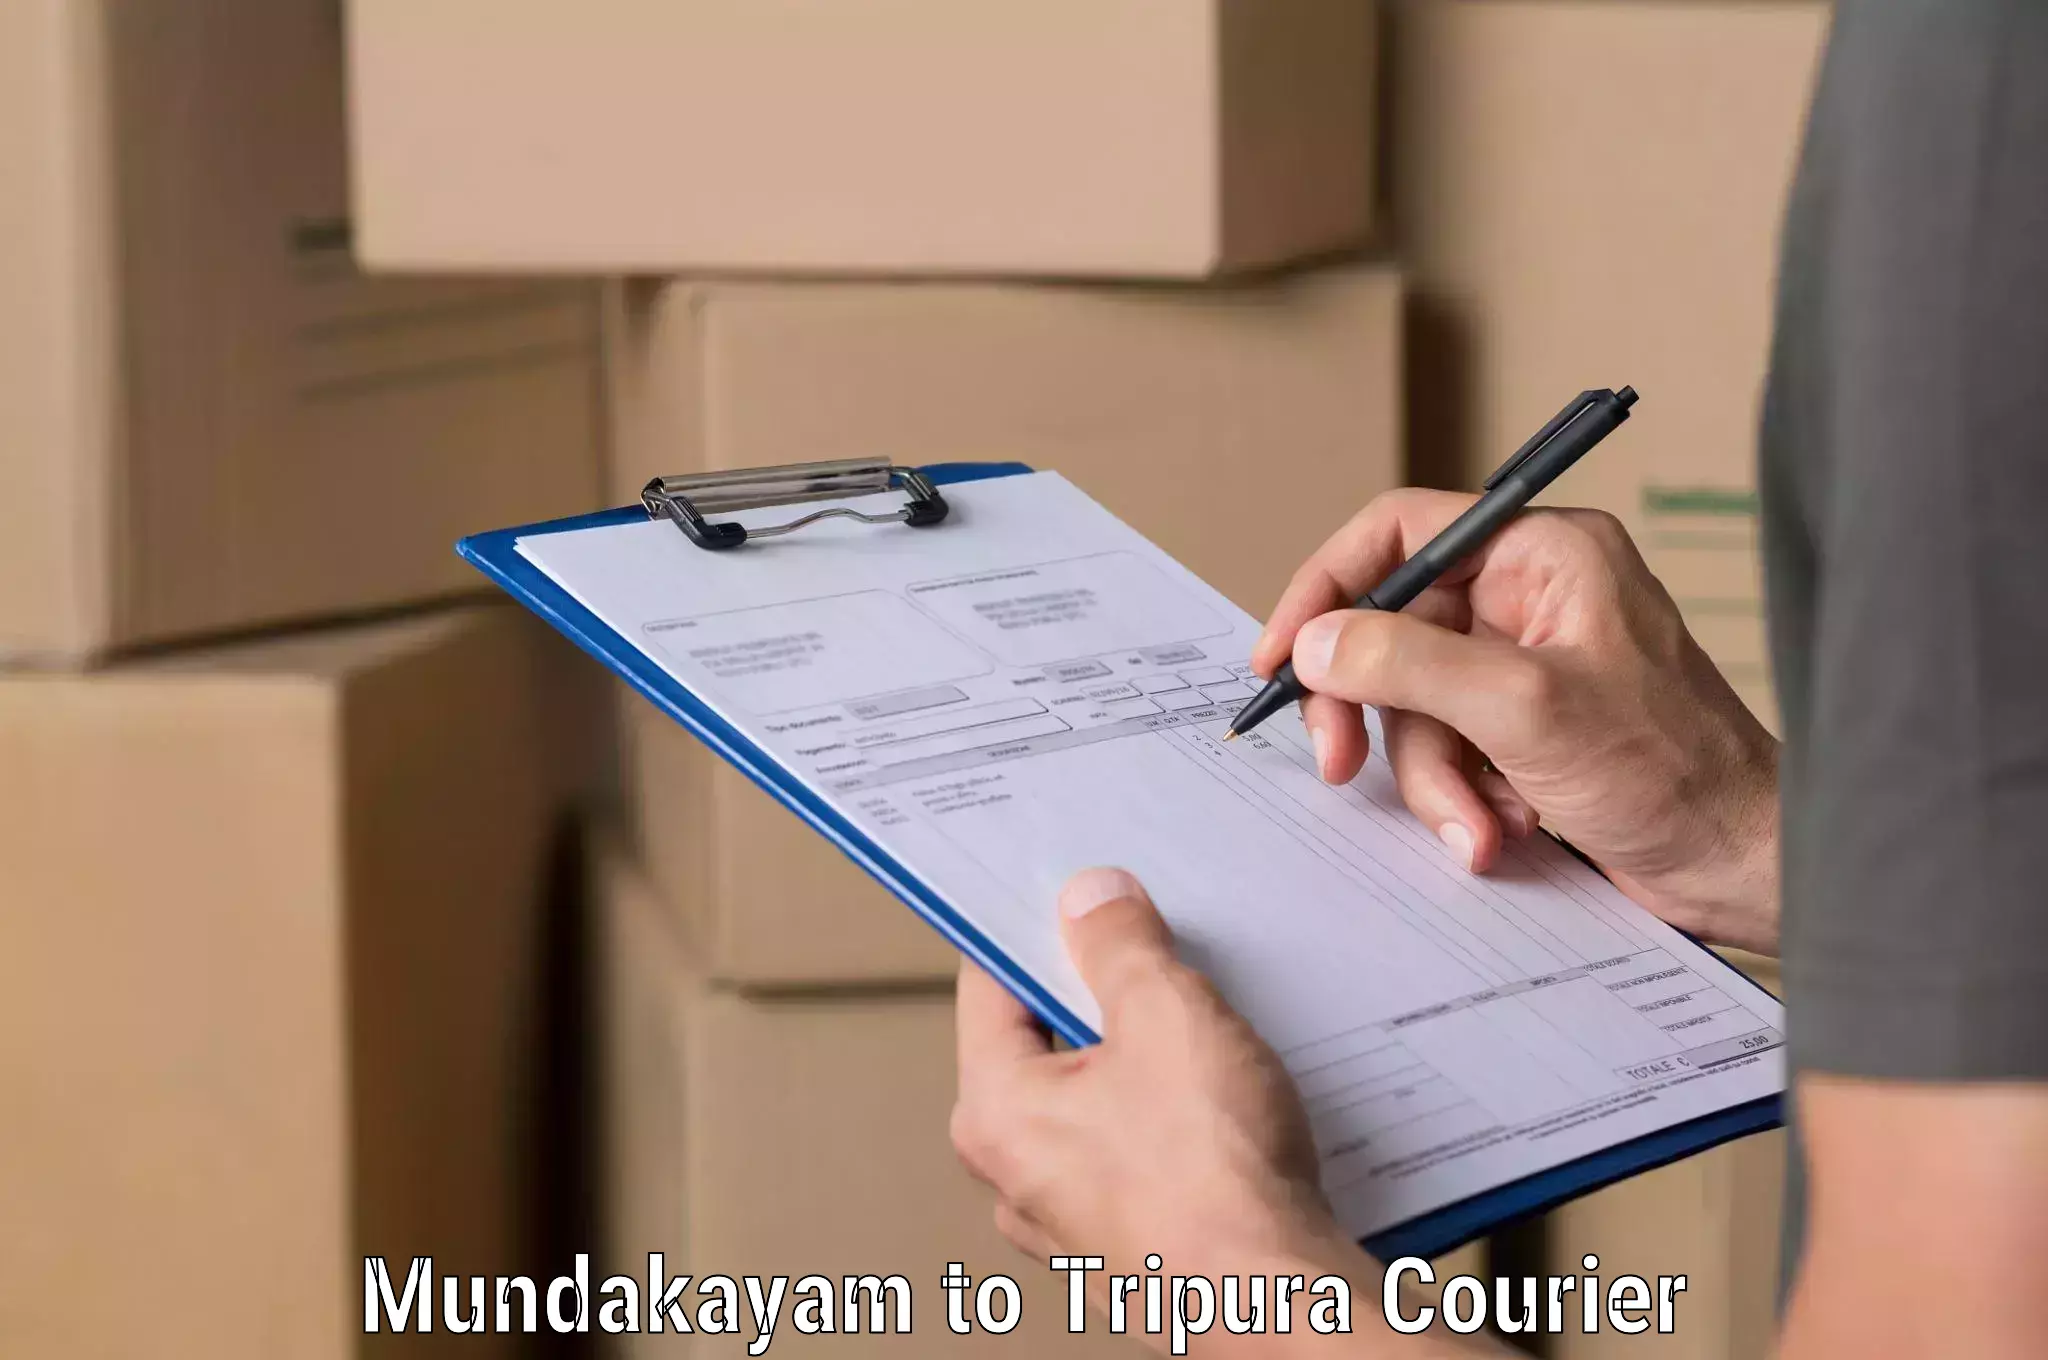 Full-service courier options Mundakayam to North Tripura